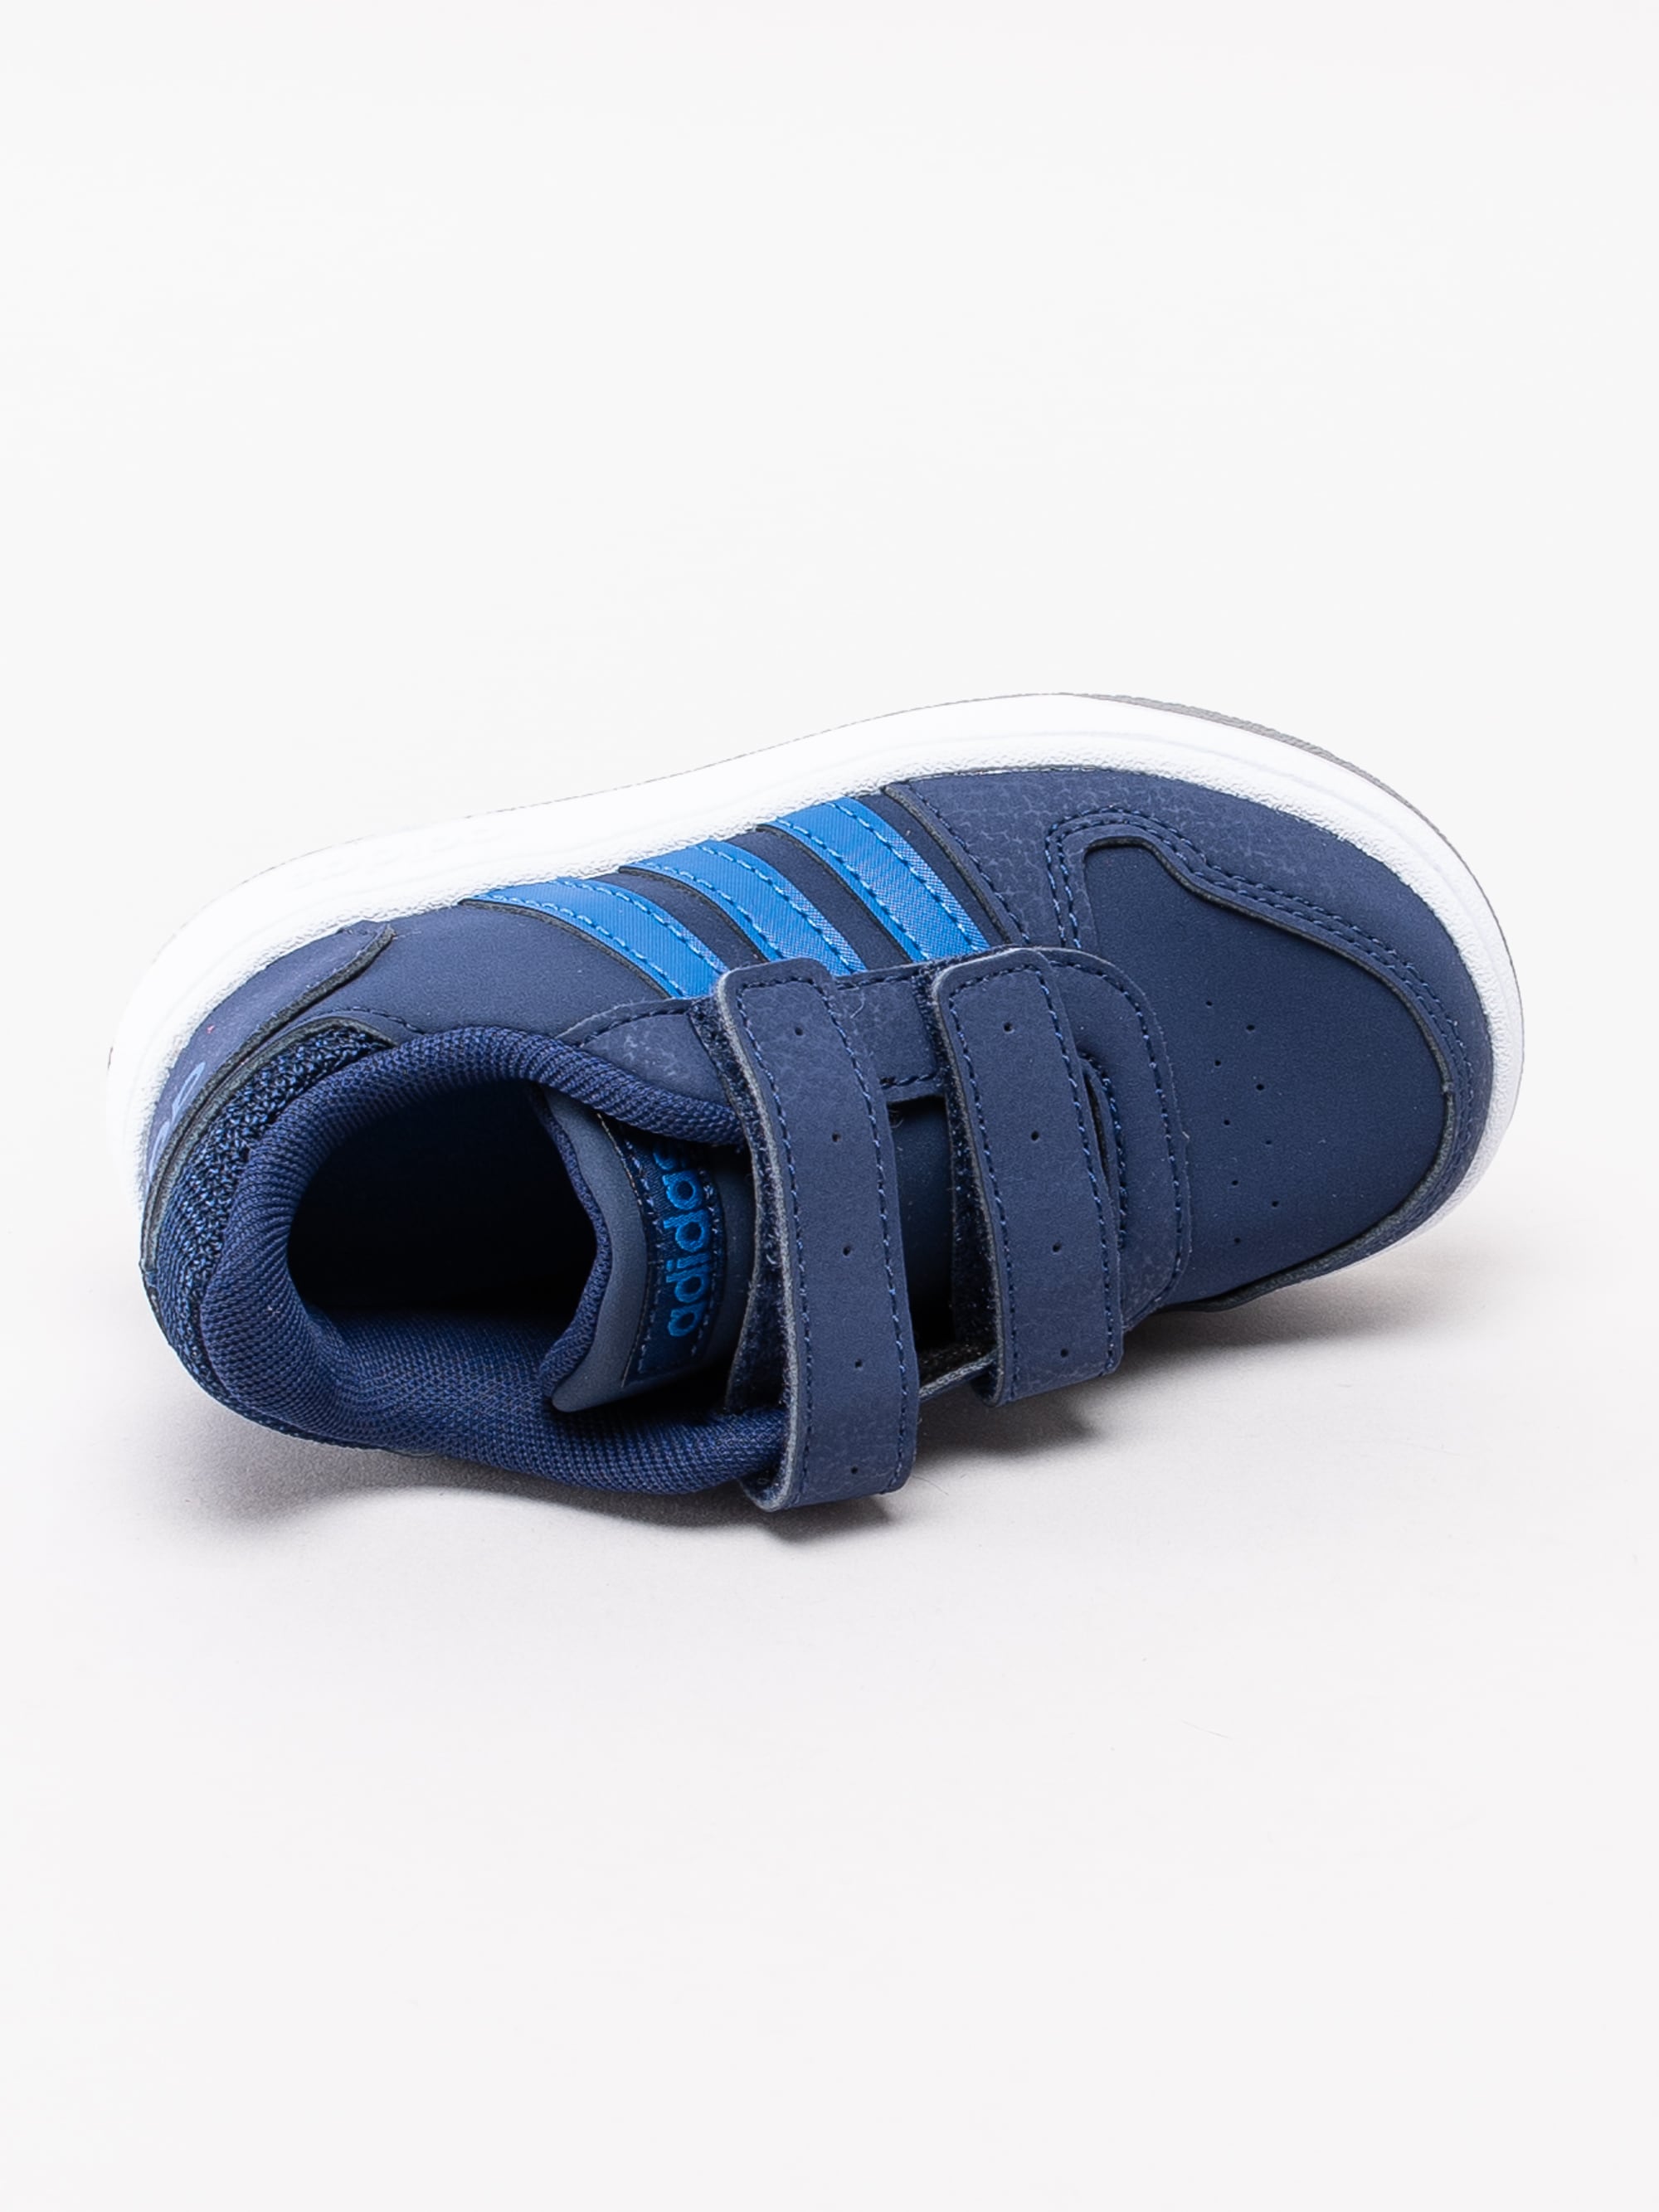 56193009 Adidas Hoops 2.0 Cmf I EE9001 mörkblå sneakers för små barn med kardborre-4